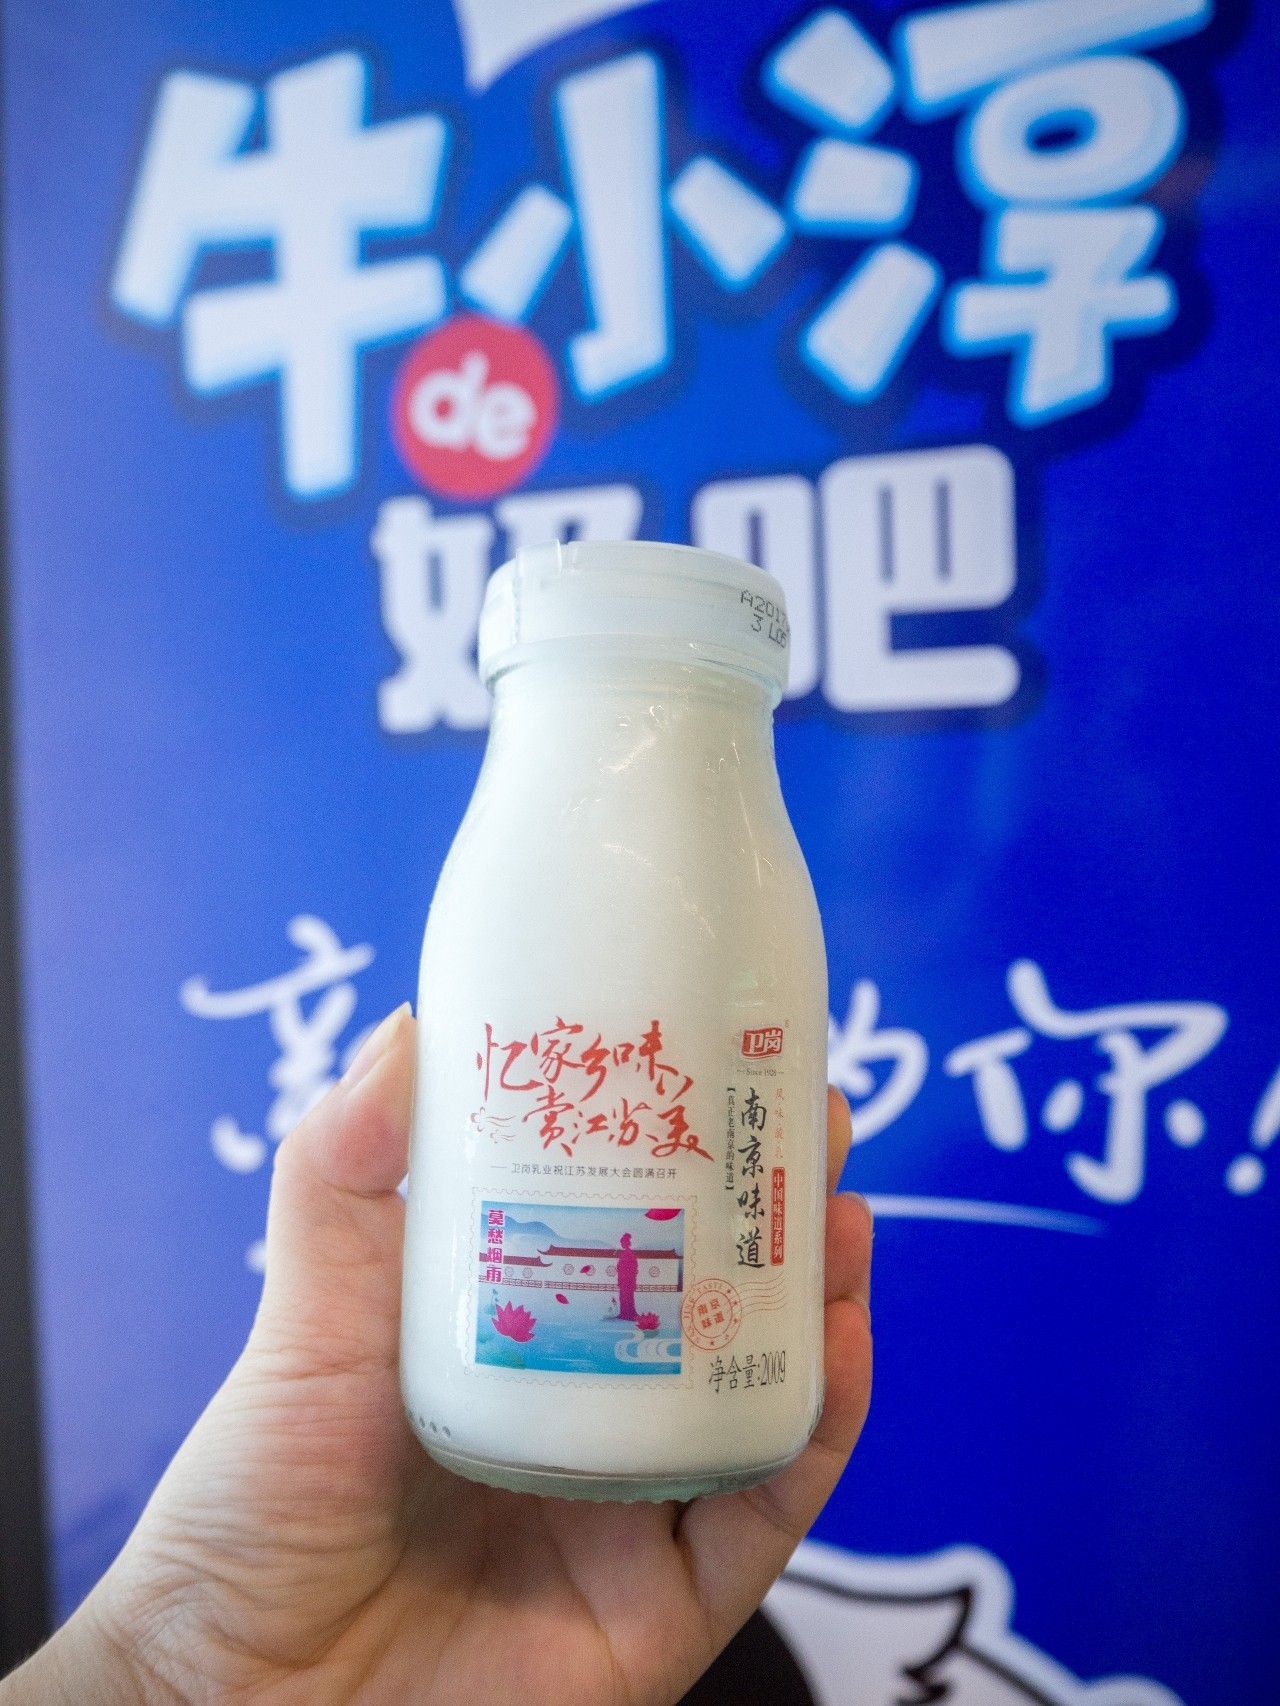 南京味道 卫岗的南京味道酸奶 正儿八经的老南京味道!